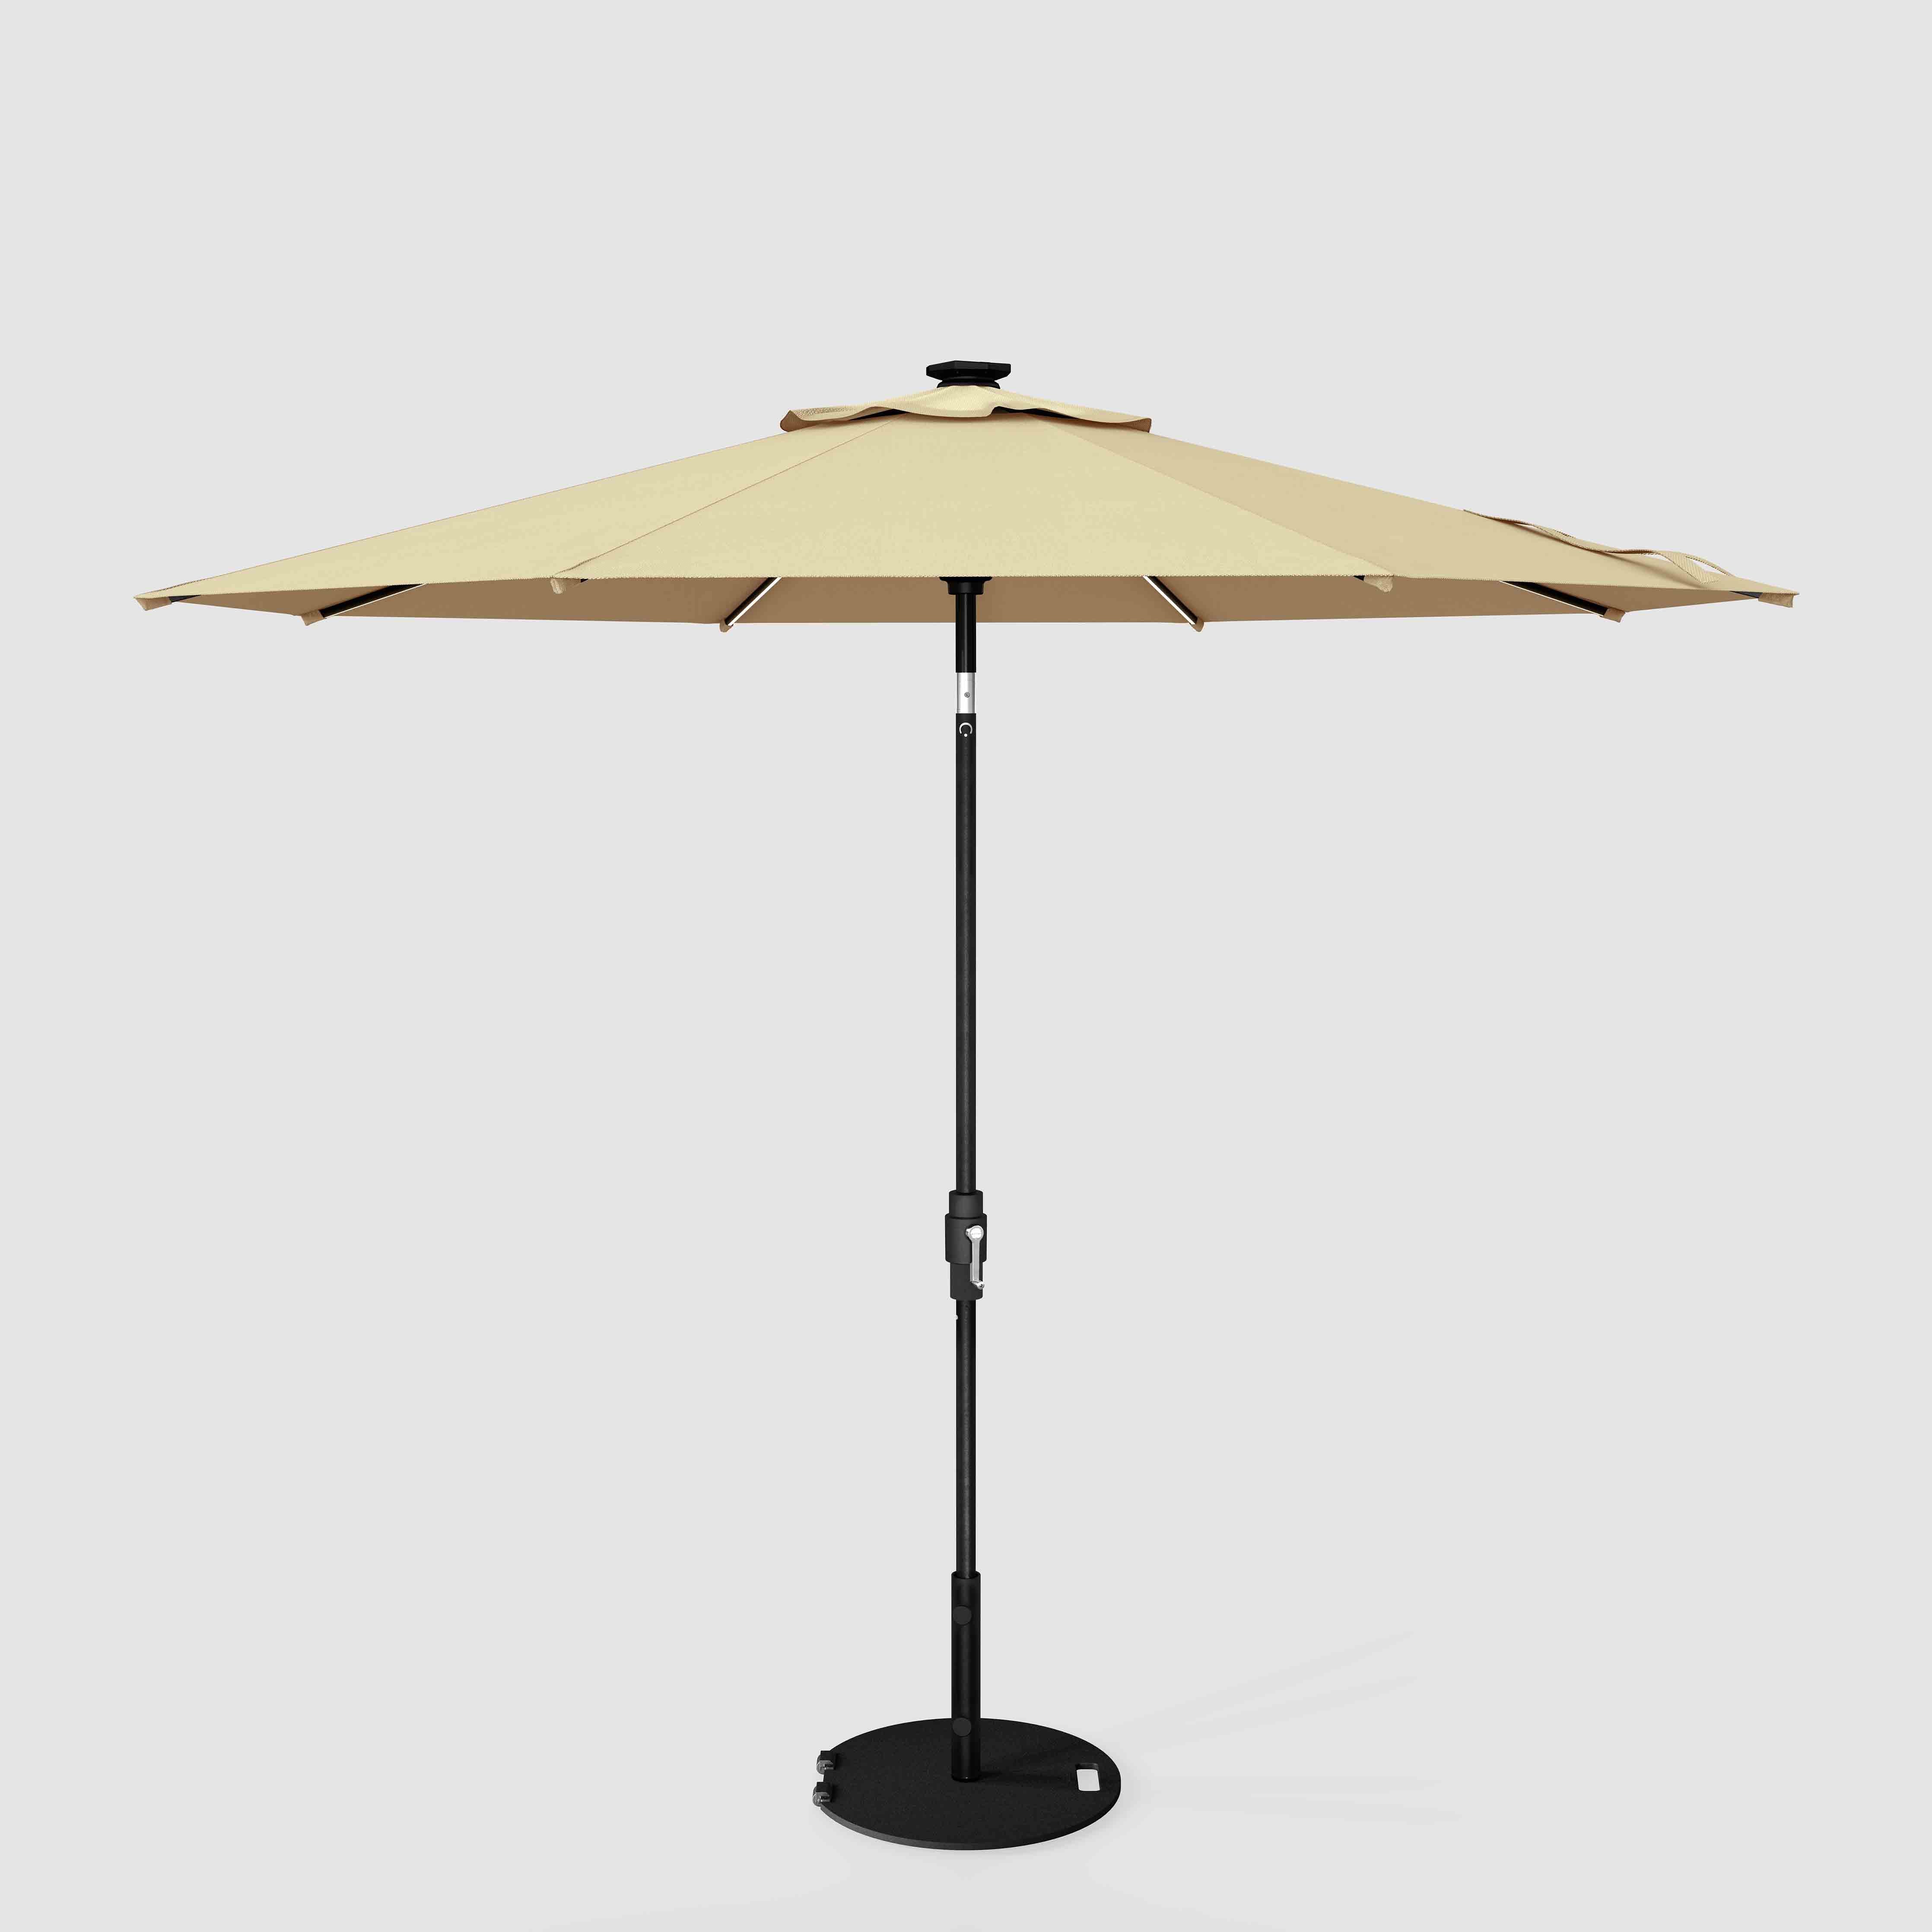 El LED Swilt™ - Sunbrella Beige antiguo